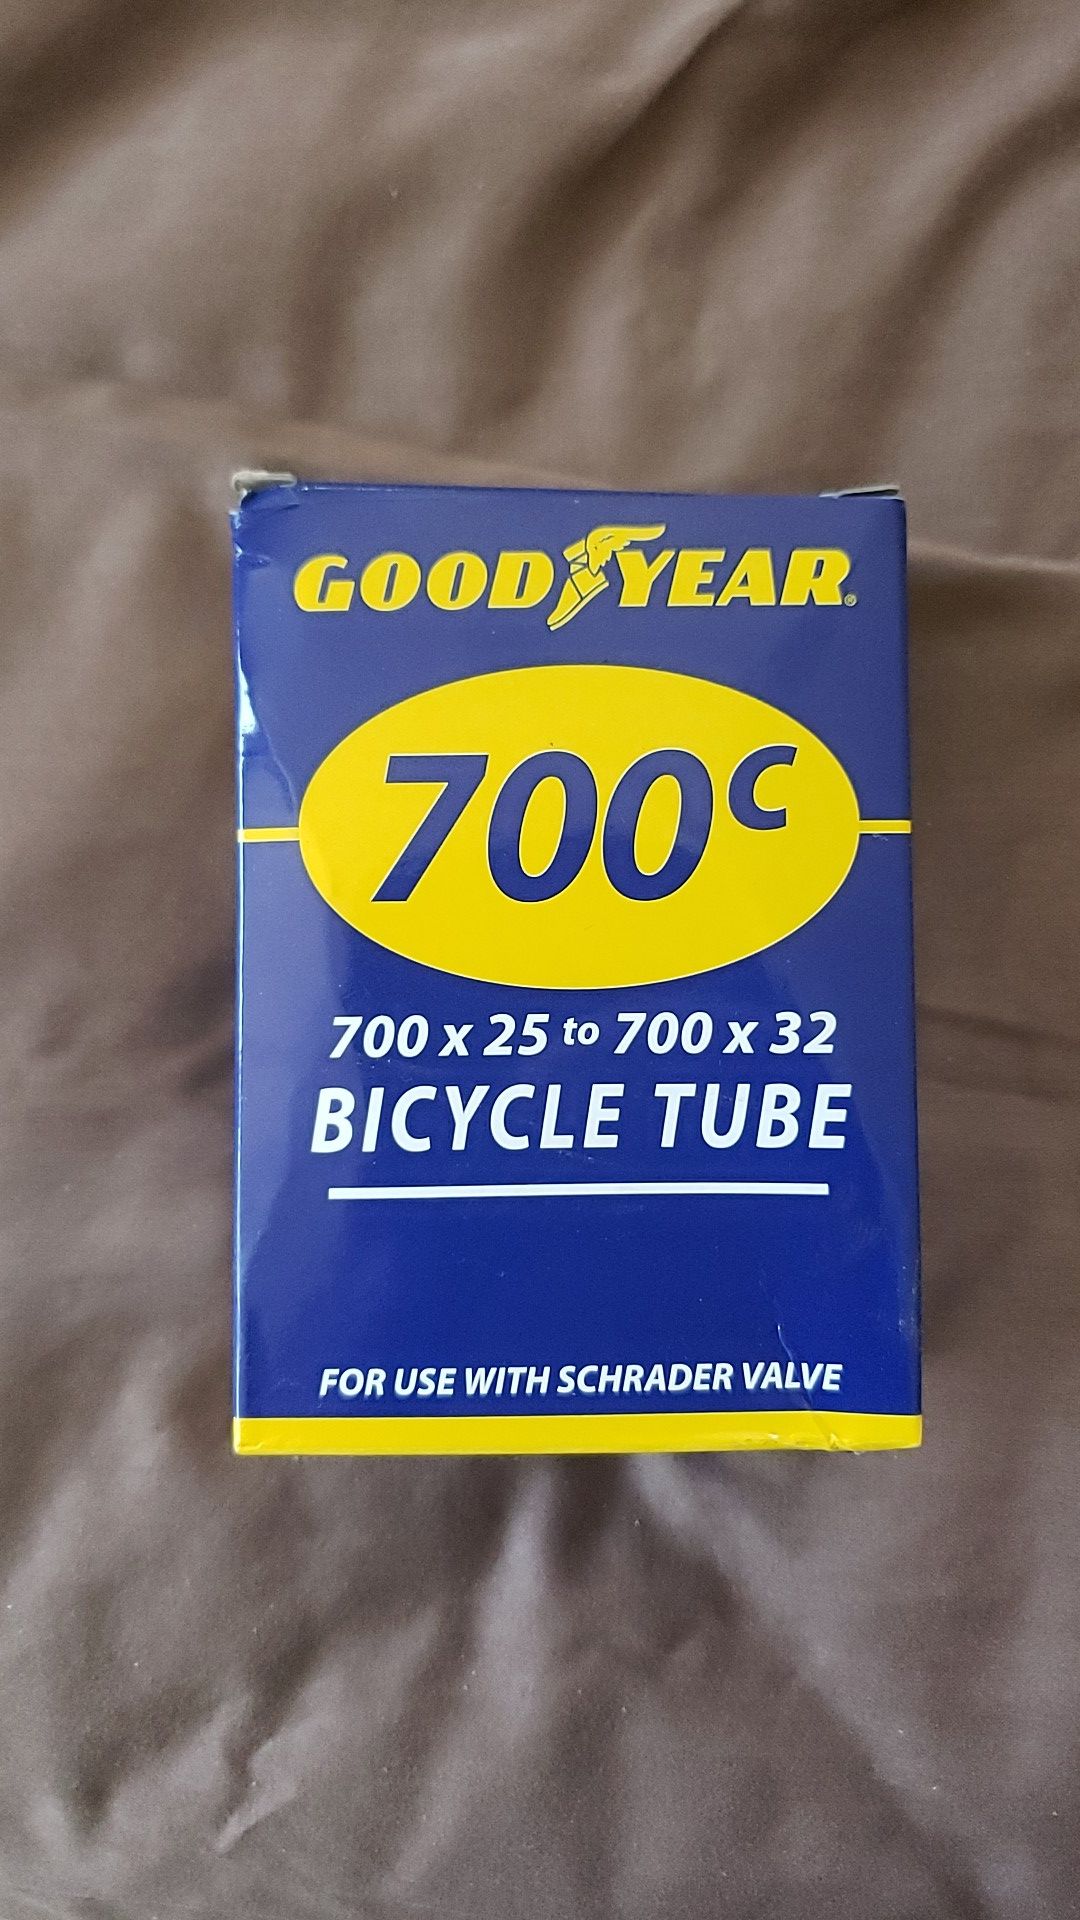 Bike tube